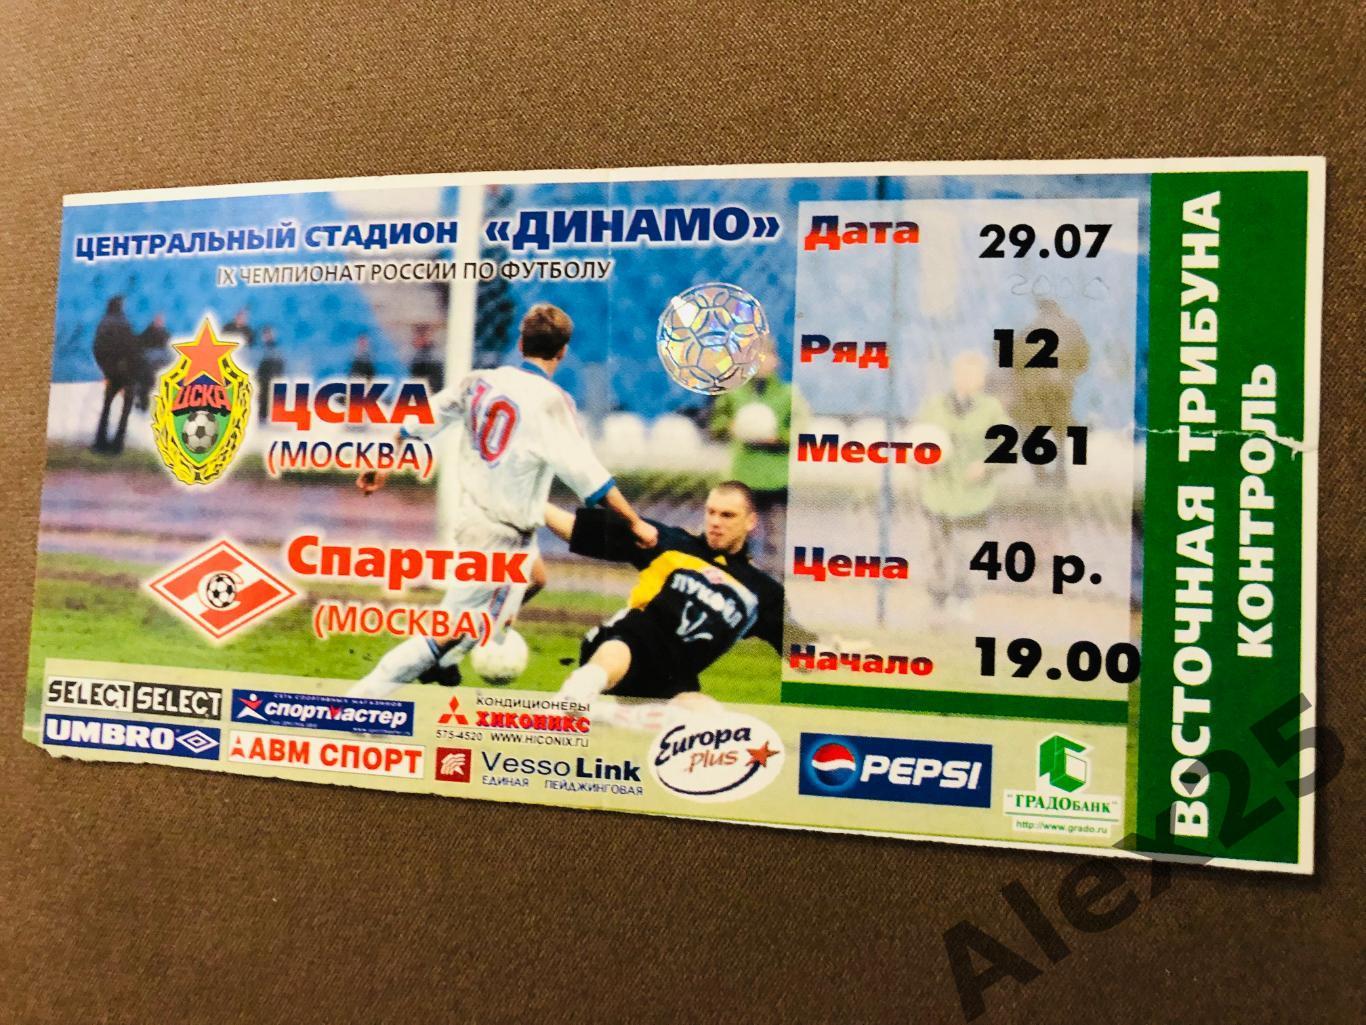 Билет футбол ЦСКА - Спартак (Москва) 2000 07.29